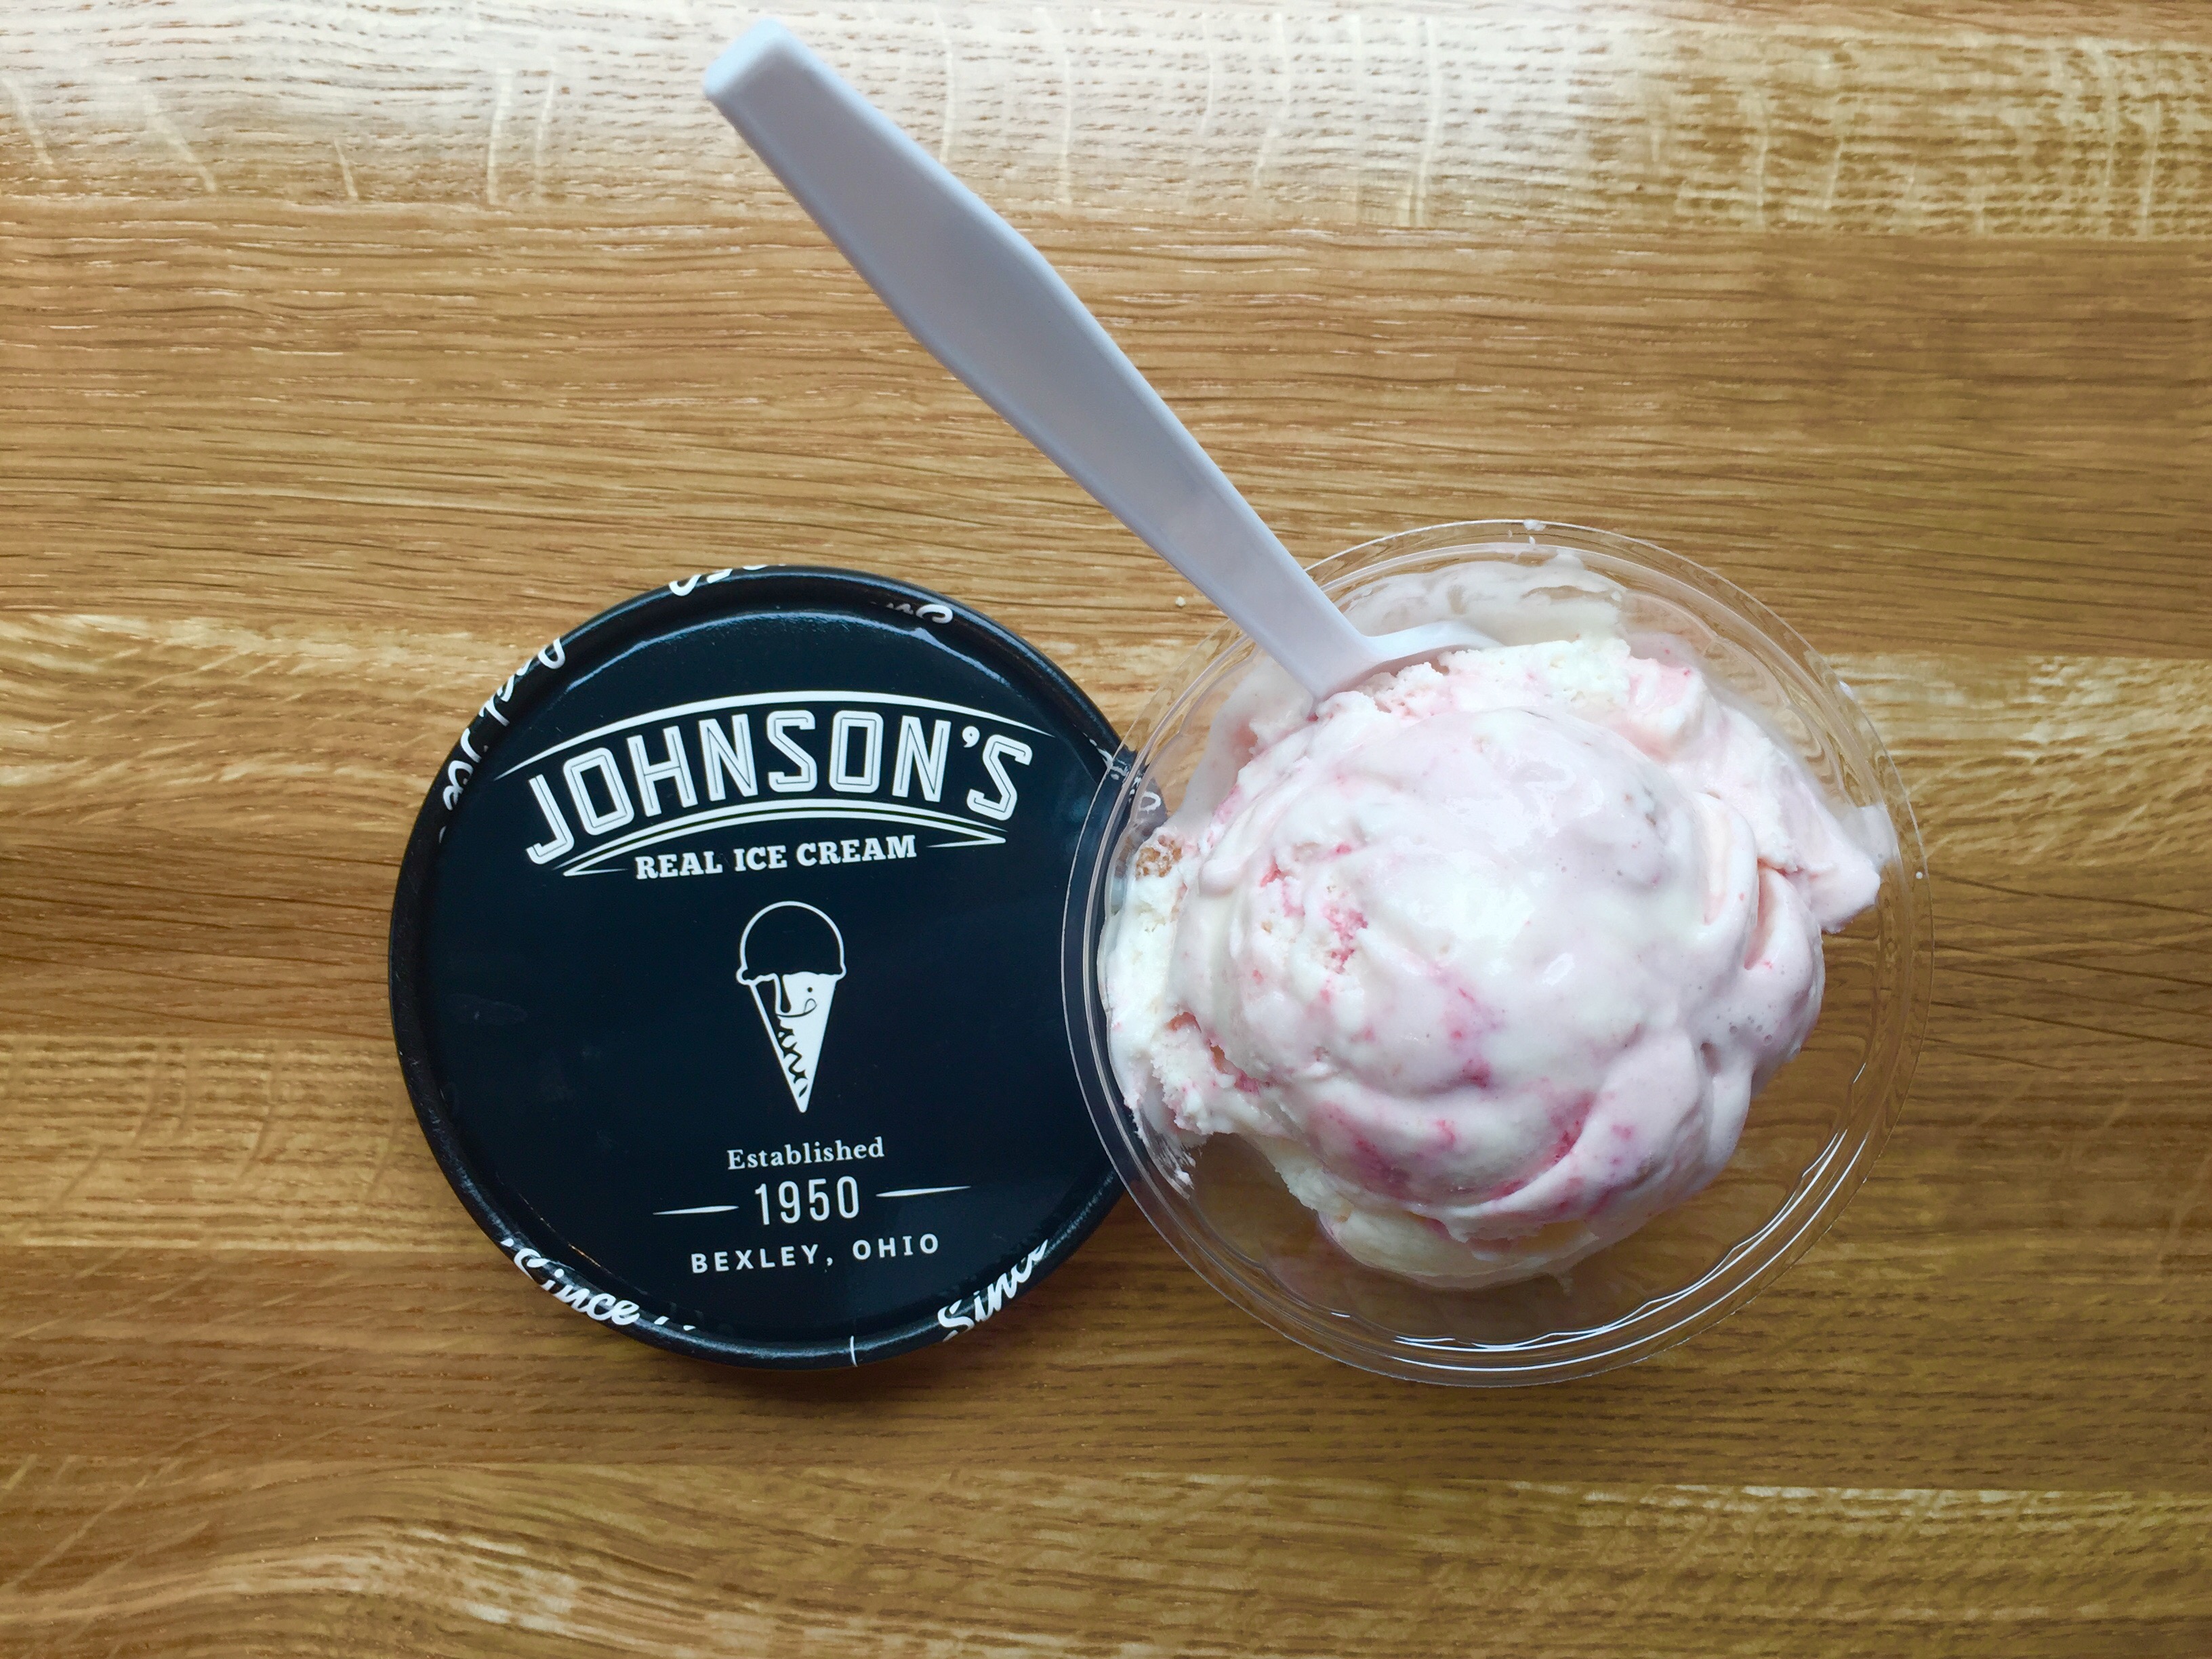 J &W Ice cream